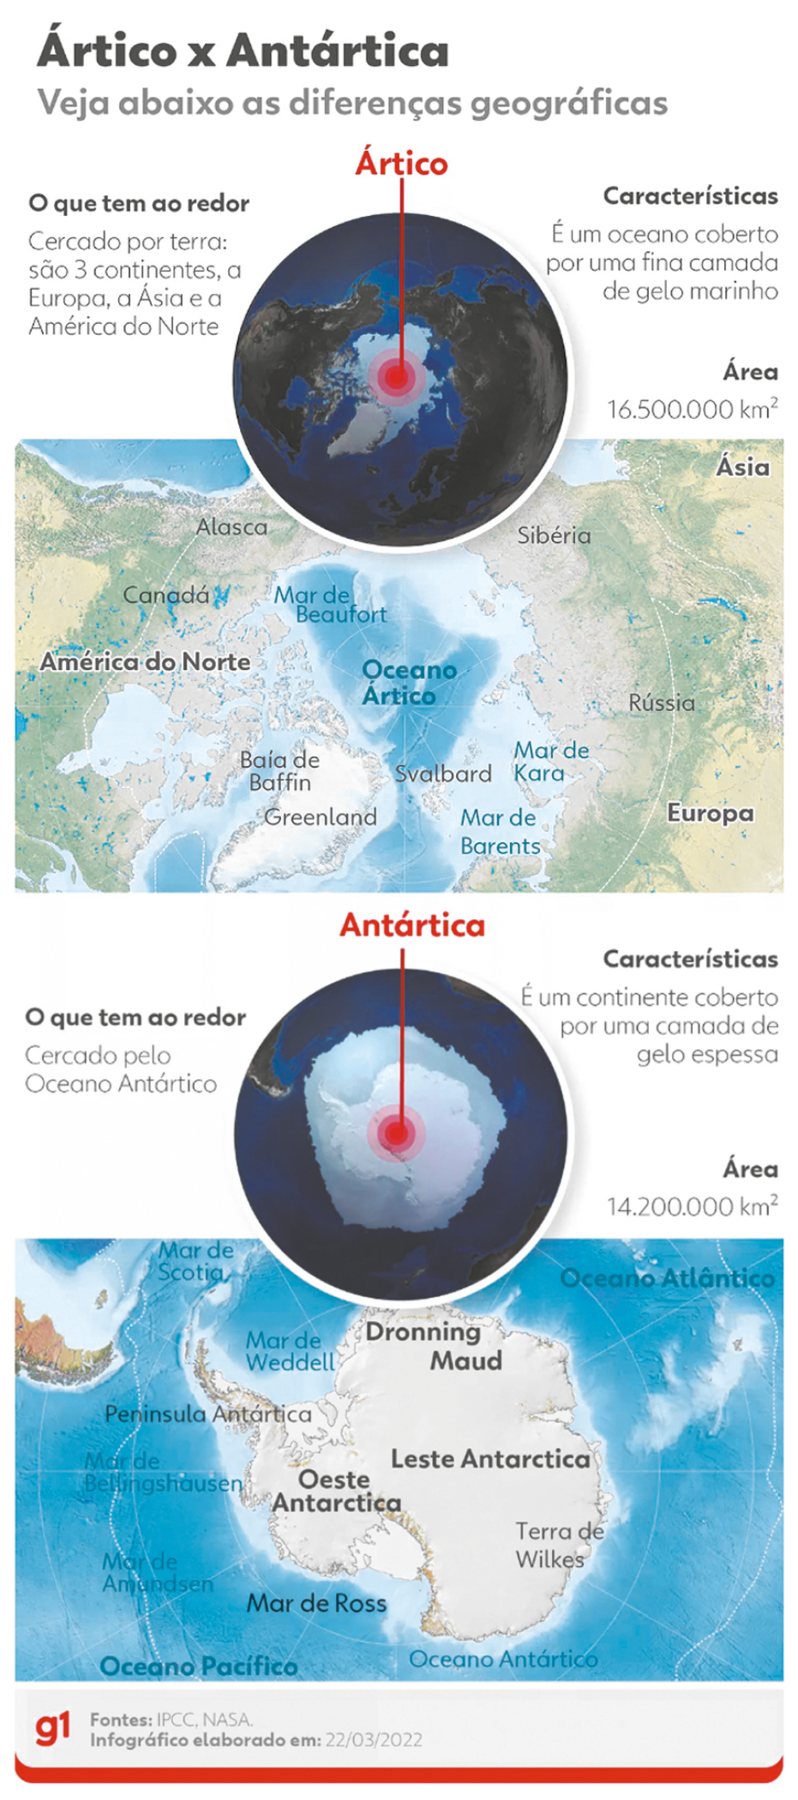 Infográfico. Infográfico na vertical. Texto: Ártico x Antártica Veja abaixo as diferenças geográficas Ártico O que tem ao redor: Cercado por terra: são 3 continentes, a Europa, a Ásia e a América do Norte. Características: É um oceano coberto por uma fina camada de gelo marinho. Ao centro, globo terrestre, com massa em branco ao centro e ao redor, continentes em marrom. A massa em branco: Ártico. Área: 16.500.000 Km2 Mais abaixo, ilustração de mapa. No canto superior direito: Ásia. Ao centro, Oceano Ártico com mar de Beaufort. À esquerda, América do Norte e à direita, Europa. Antártica O que tem ao redor: Cercado pelo Oceano Antártico. Características: É um continente coberto por uma camada de gelo espessa. Área: 14.200.000 km2 Mais abaixo, ilustração de mapa. No canto superior direito: Oceano Atlântico. Ao centro: Dronning Maud, Oeste Antarctica, Leste Antarctica.